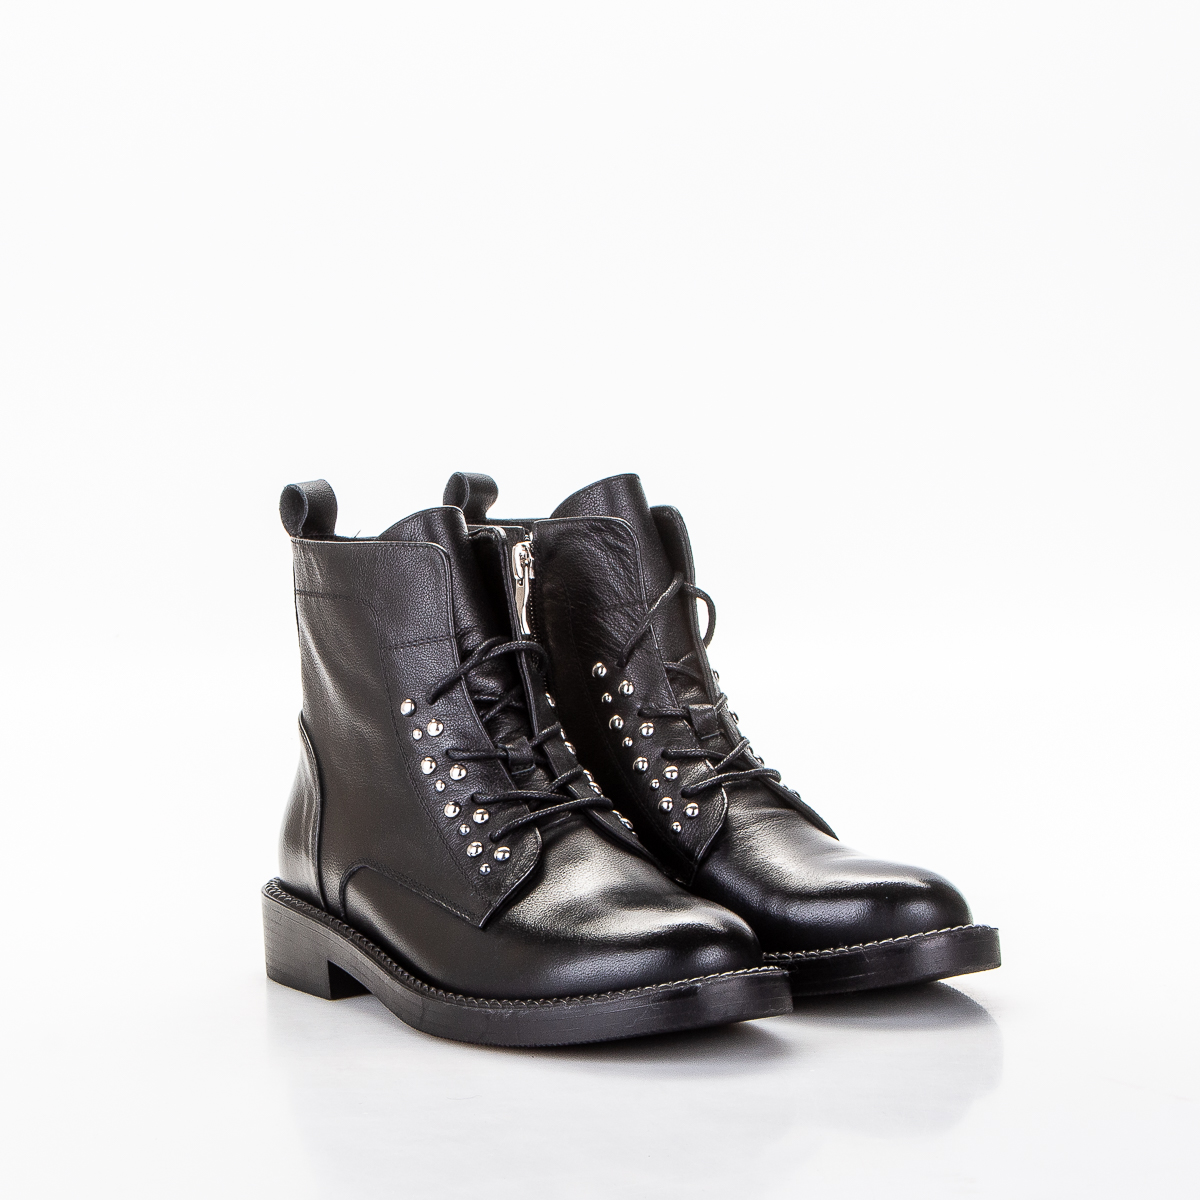 Фото Ботинки женские P95-253 black купить на lauf.shoes